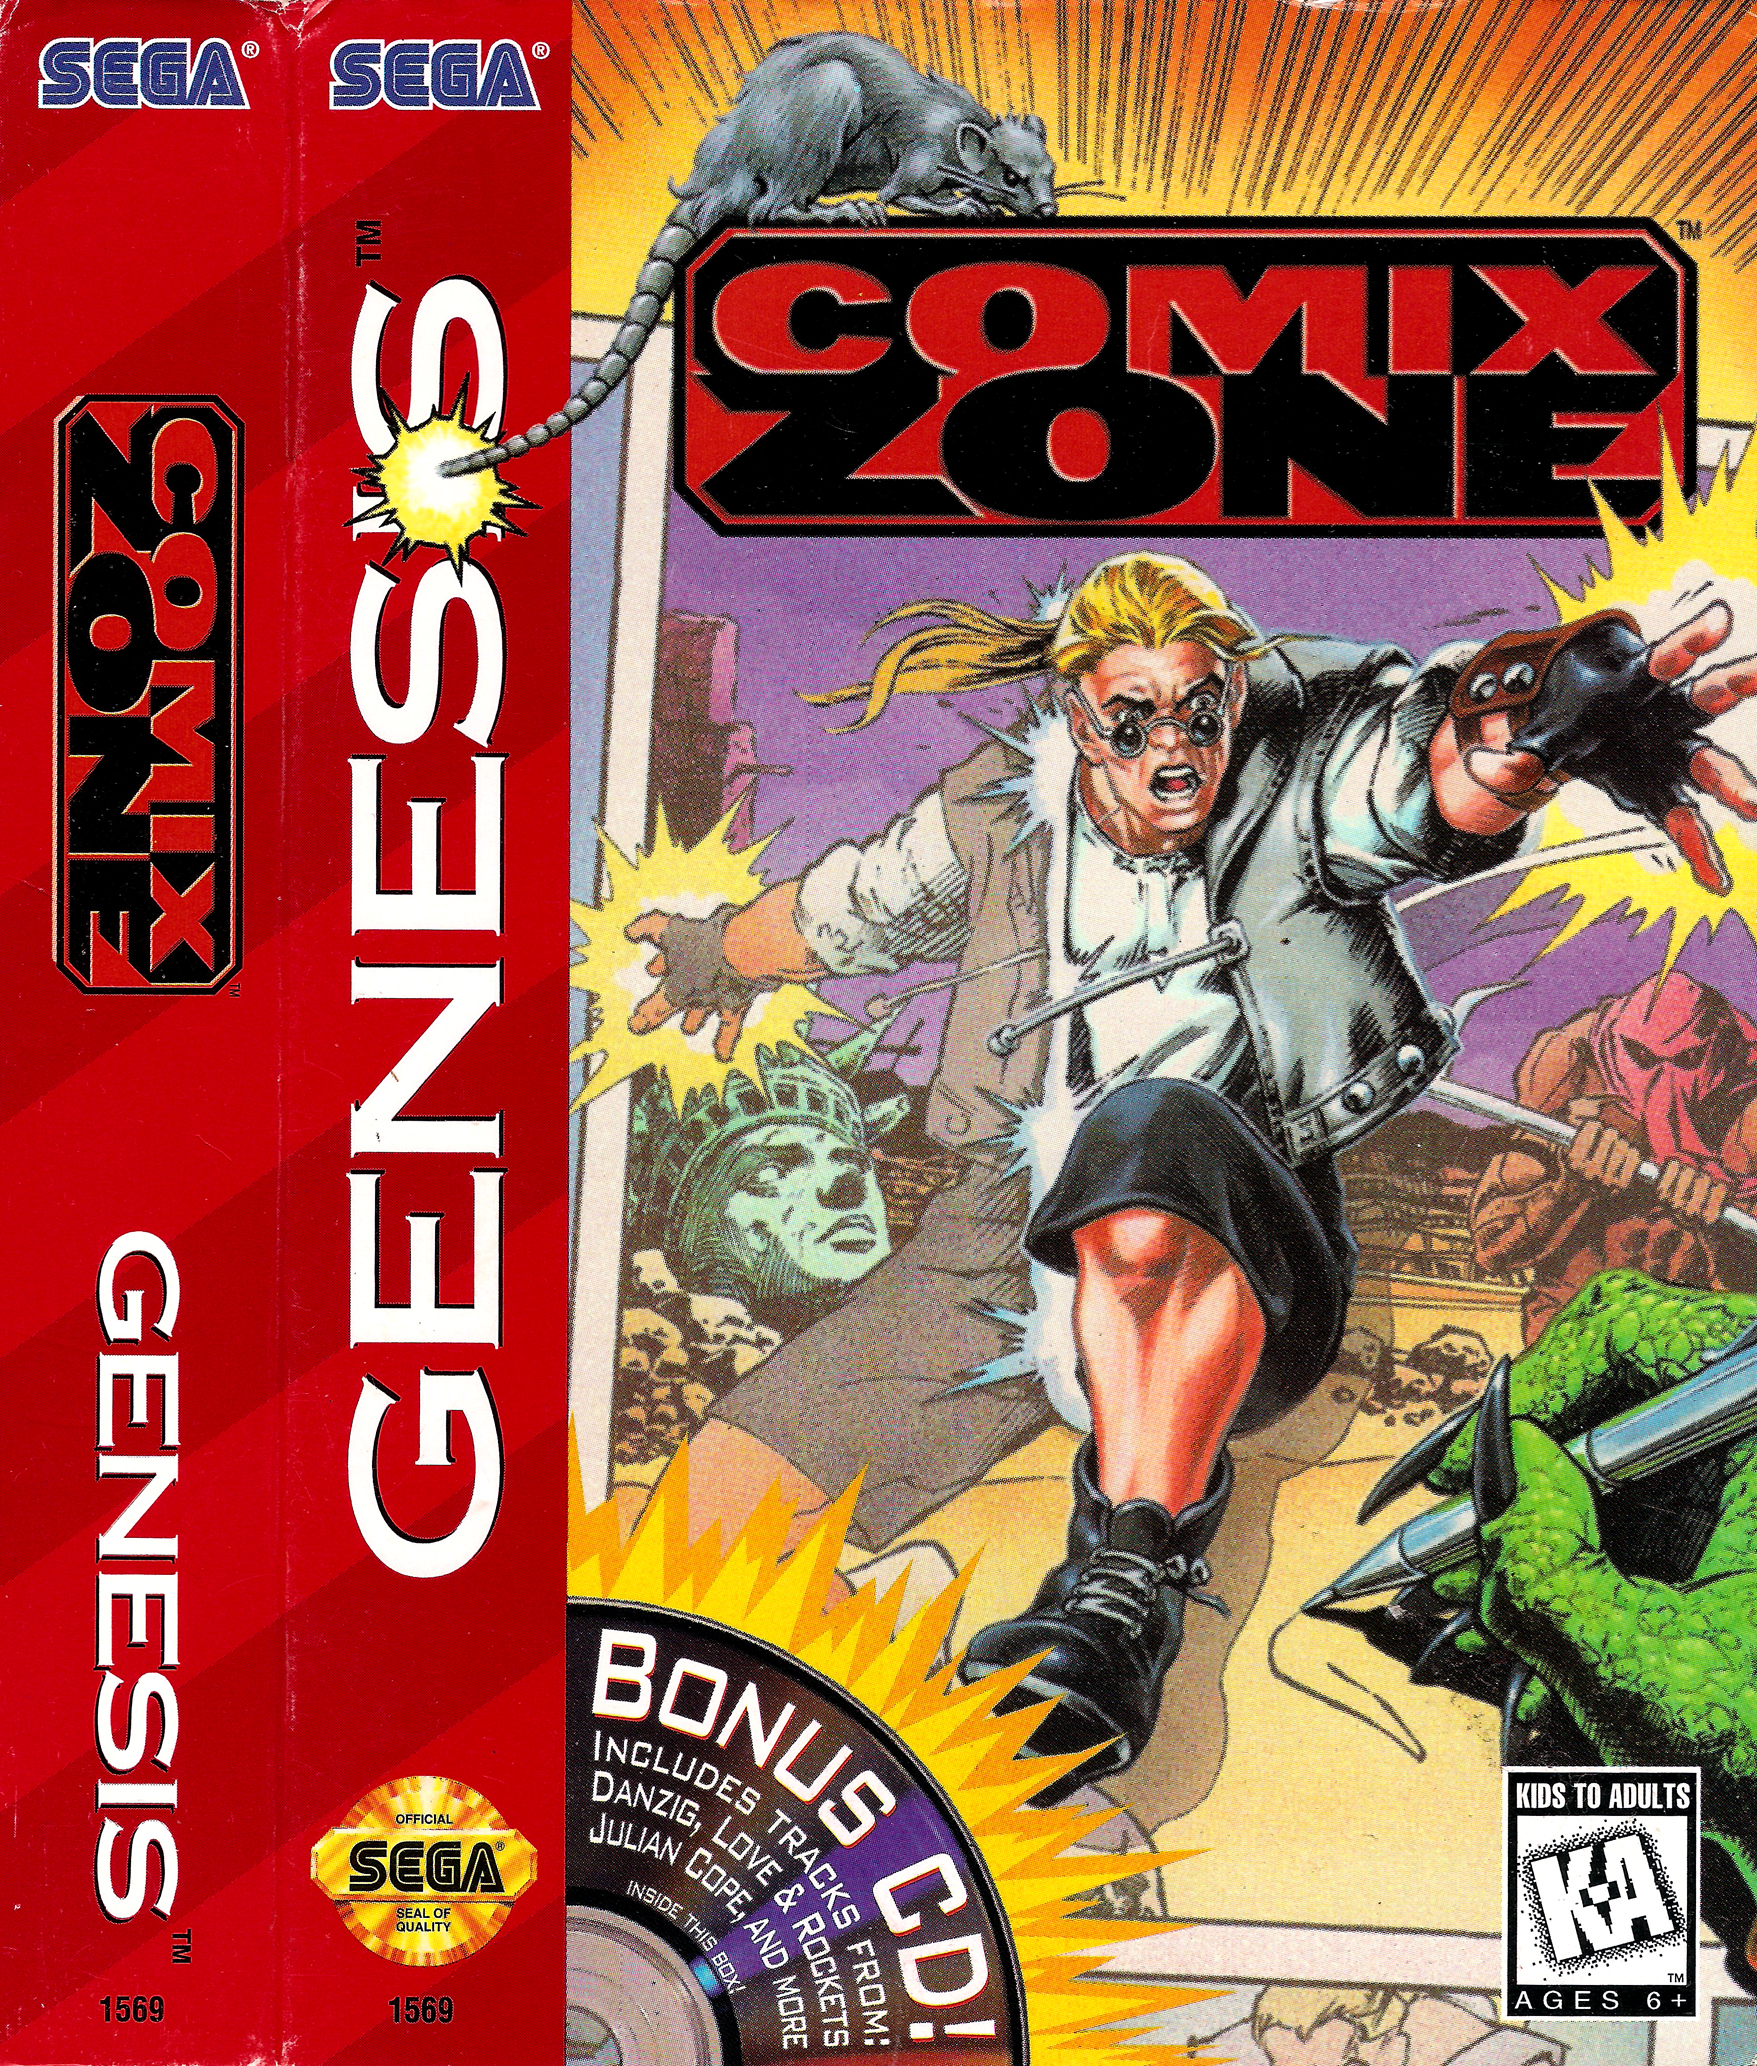 Игра на сегу комикс. Comix Zone Sega картридж. Комикс зон сега обложка. Sega игра комикс. Игра на сеге комикс зона.